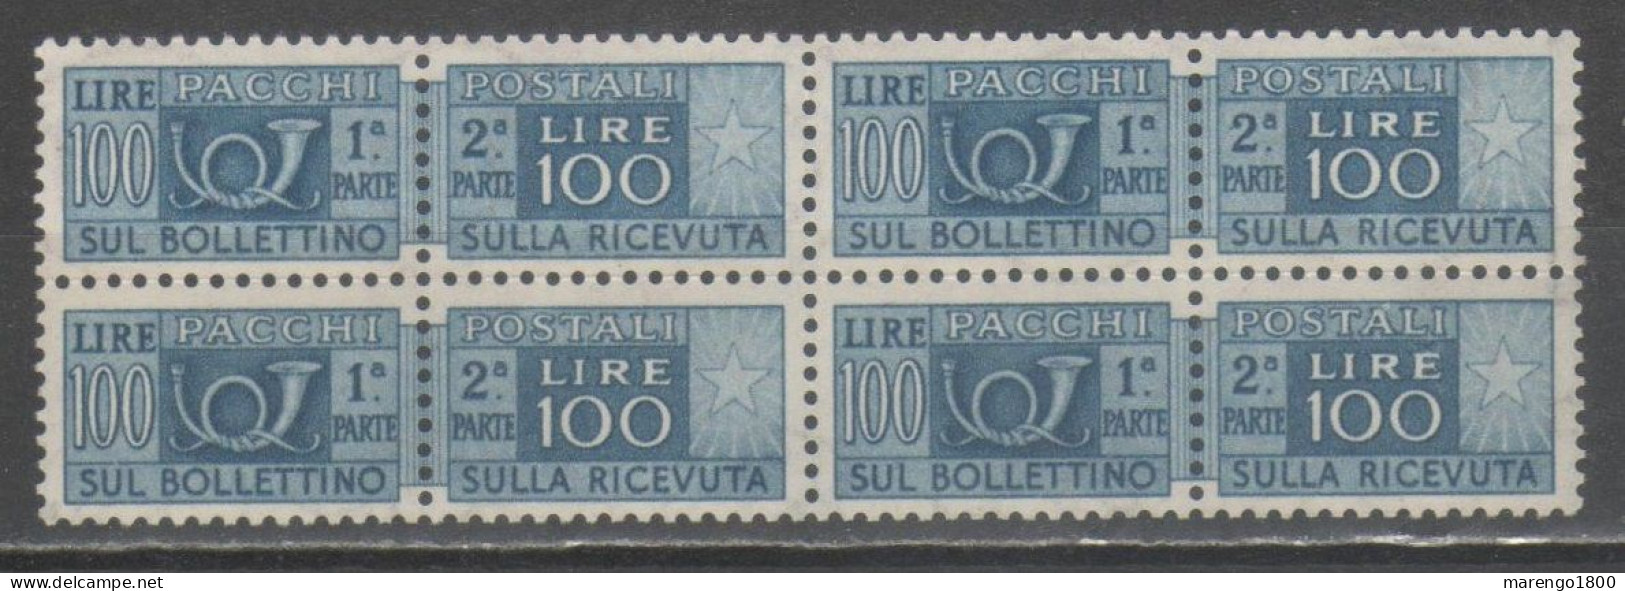 ITALIA 1946 - Pacchi 100 L. ** Quartina (2 Scan - Gomma Scura)             (g9640) - Postpaketten